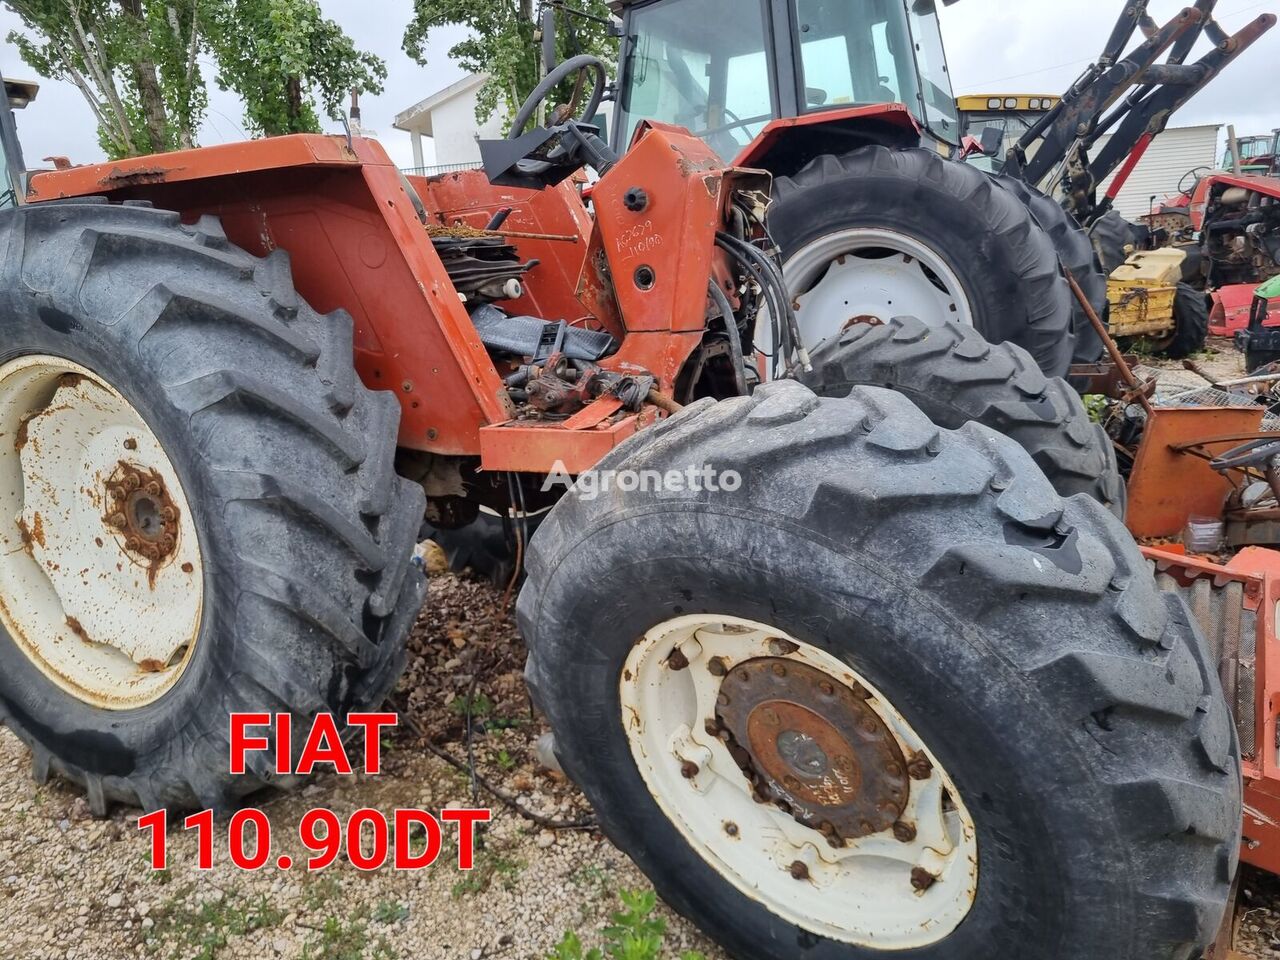 трактор колесный FIAT 110-90DT para peças по запчастям